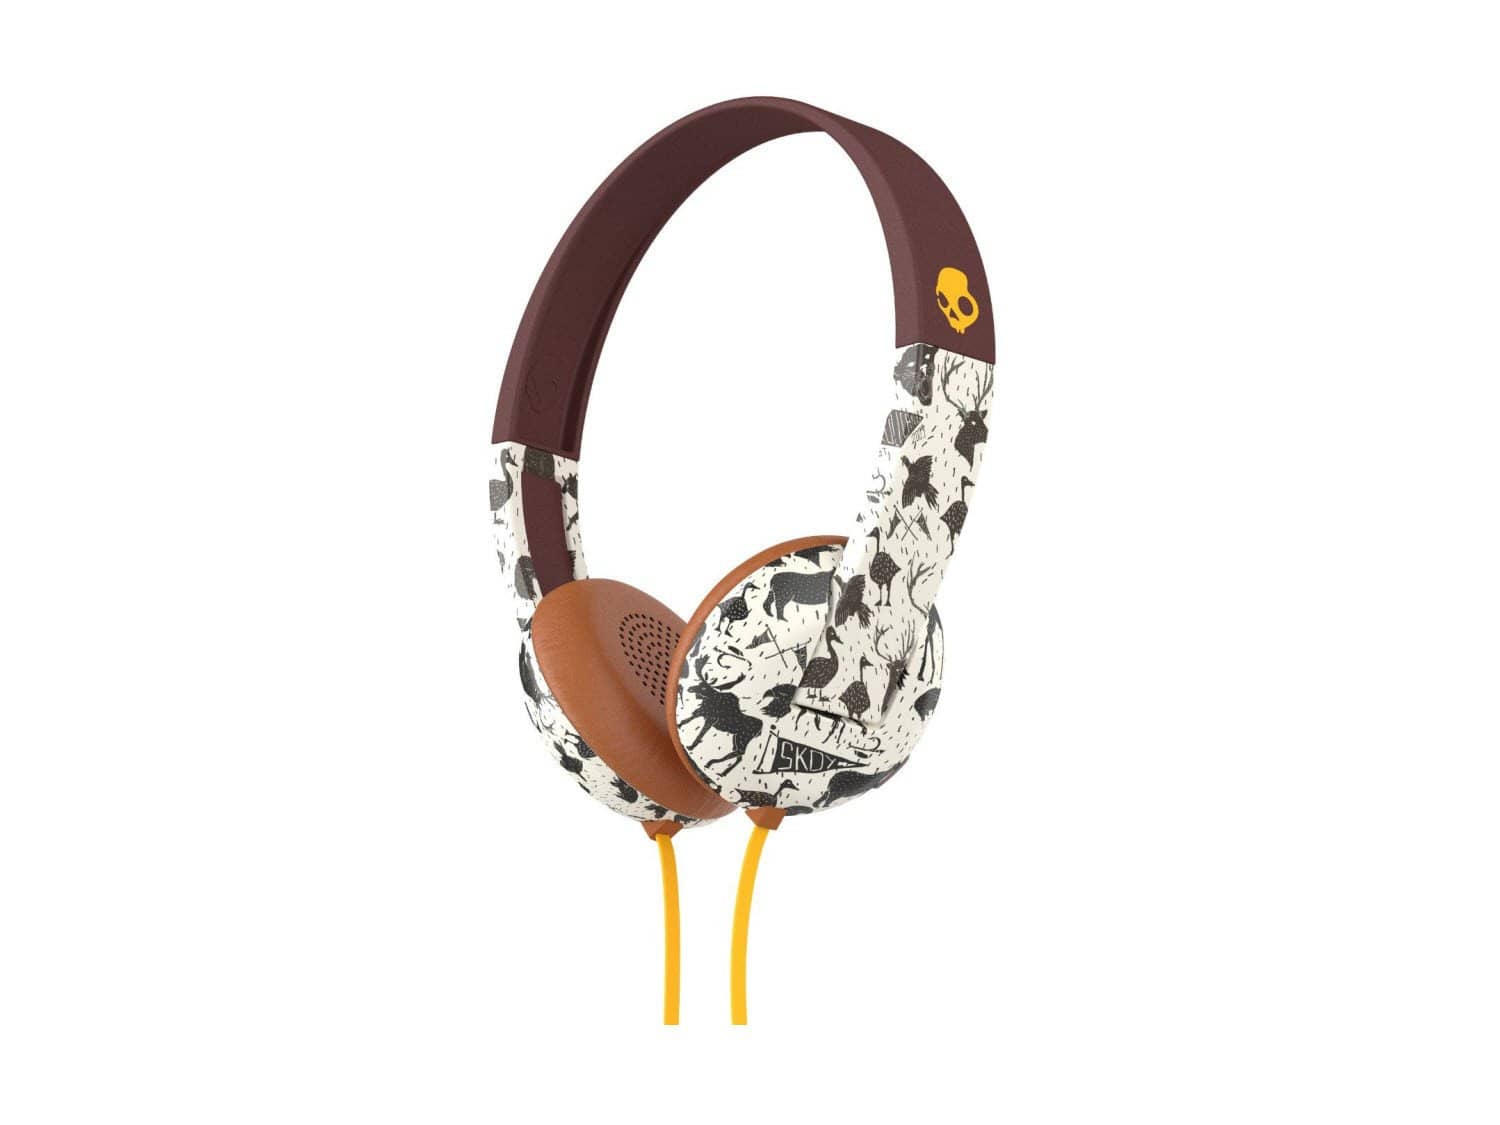 Skullcandy Uproar On-ear Headphones - Animal/Mustard